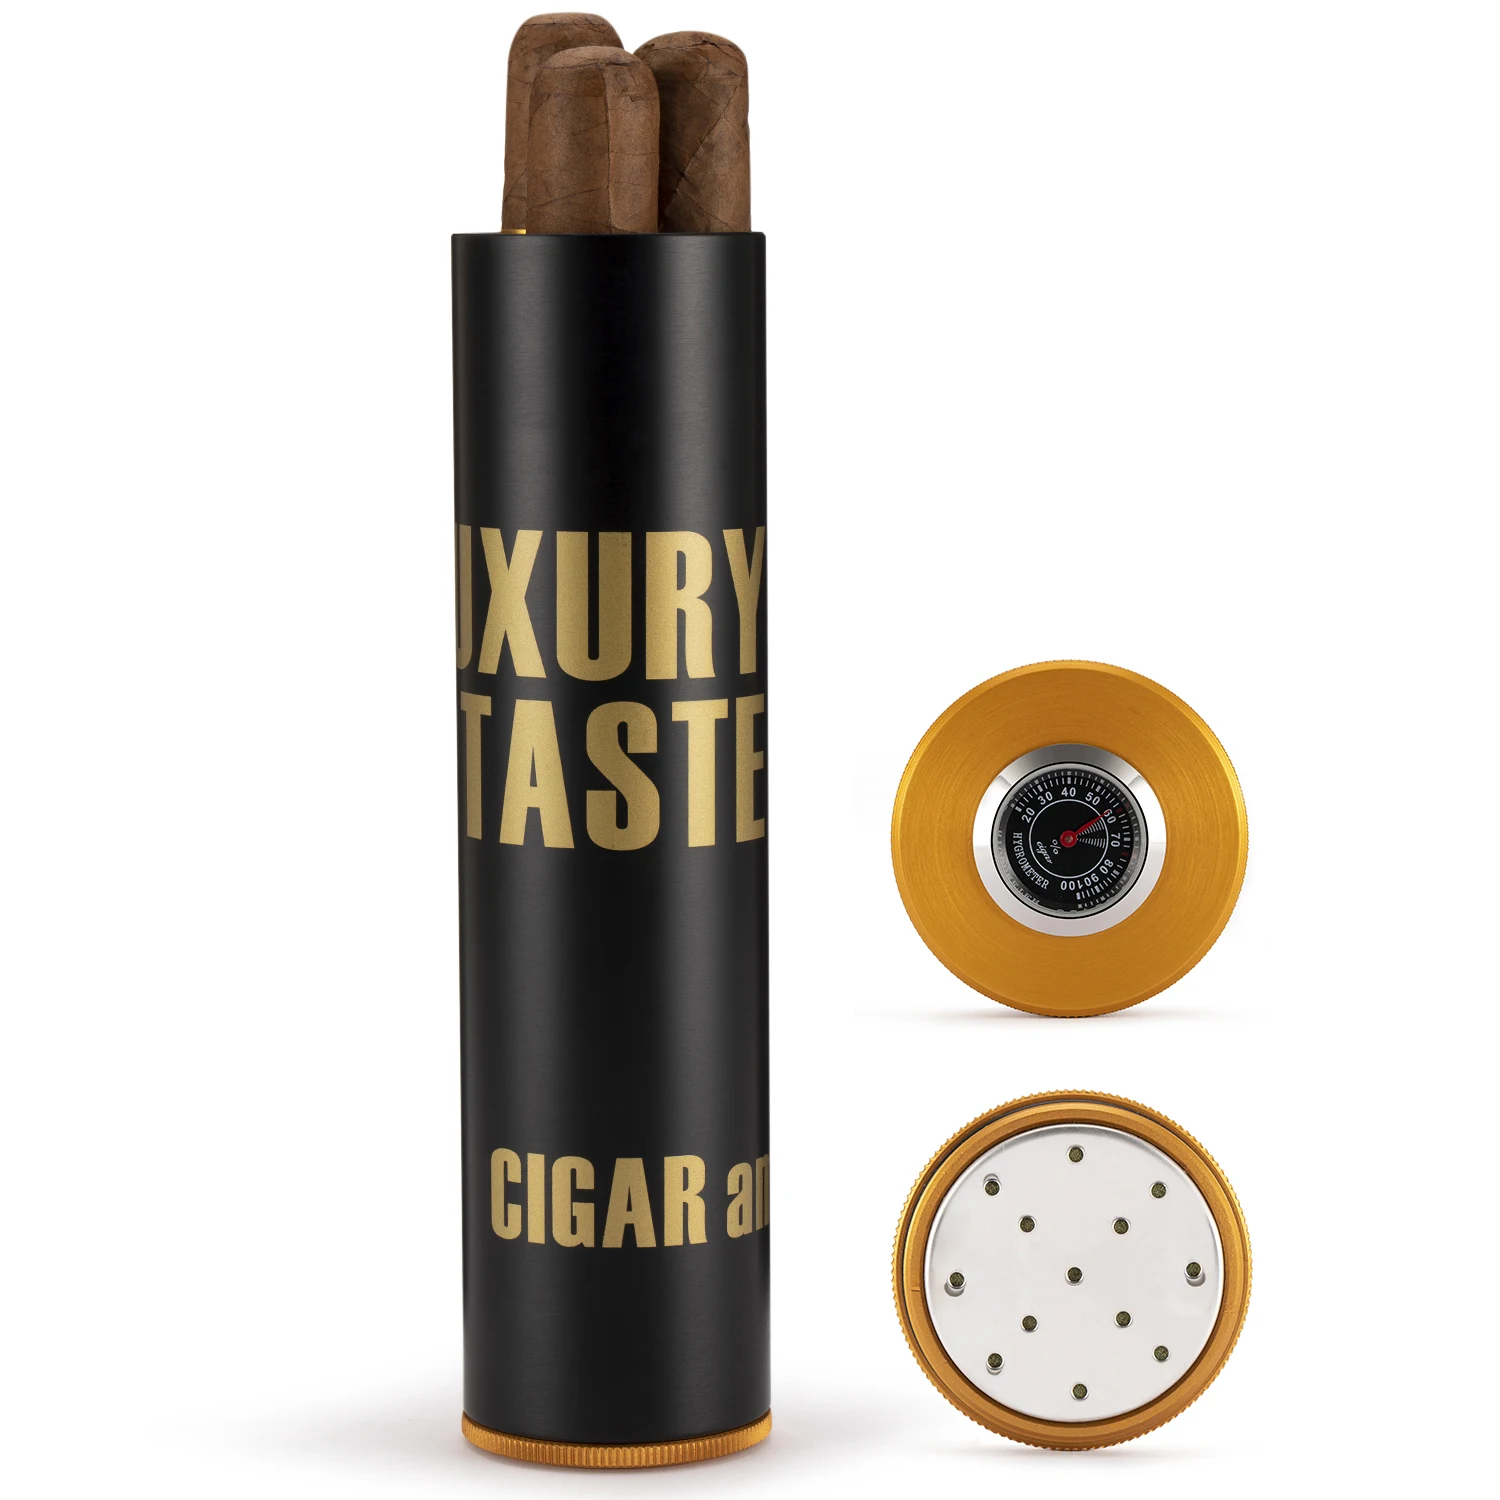 XIFEI-humidificador de viaje con humidificador, caja de cigarros con higrómetro, antideslizante, caja portátil de Metal de lujo, 3-5 capacidades, regalo personalizado